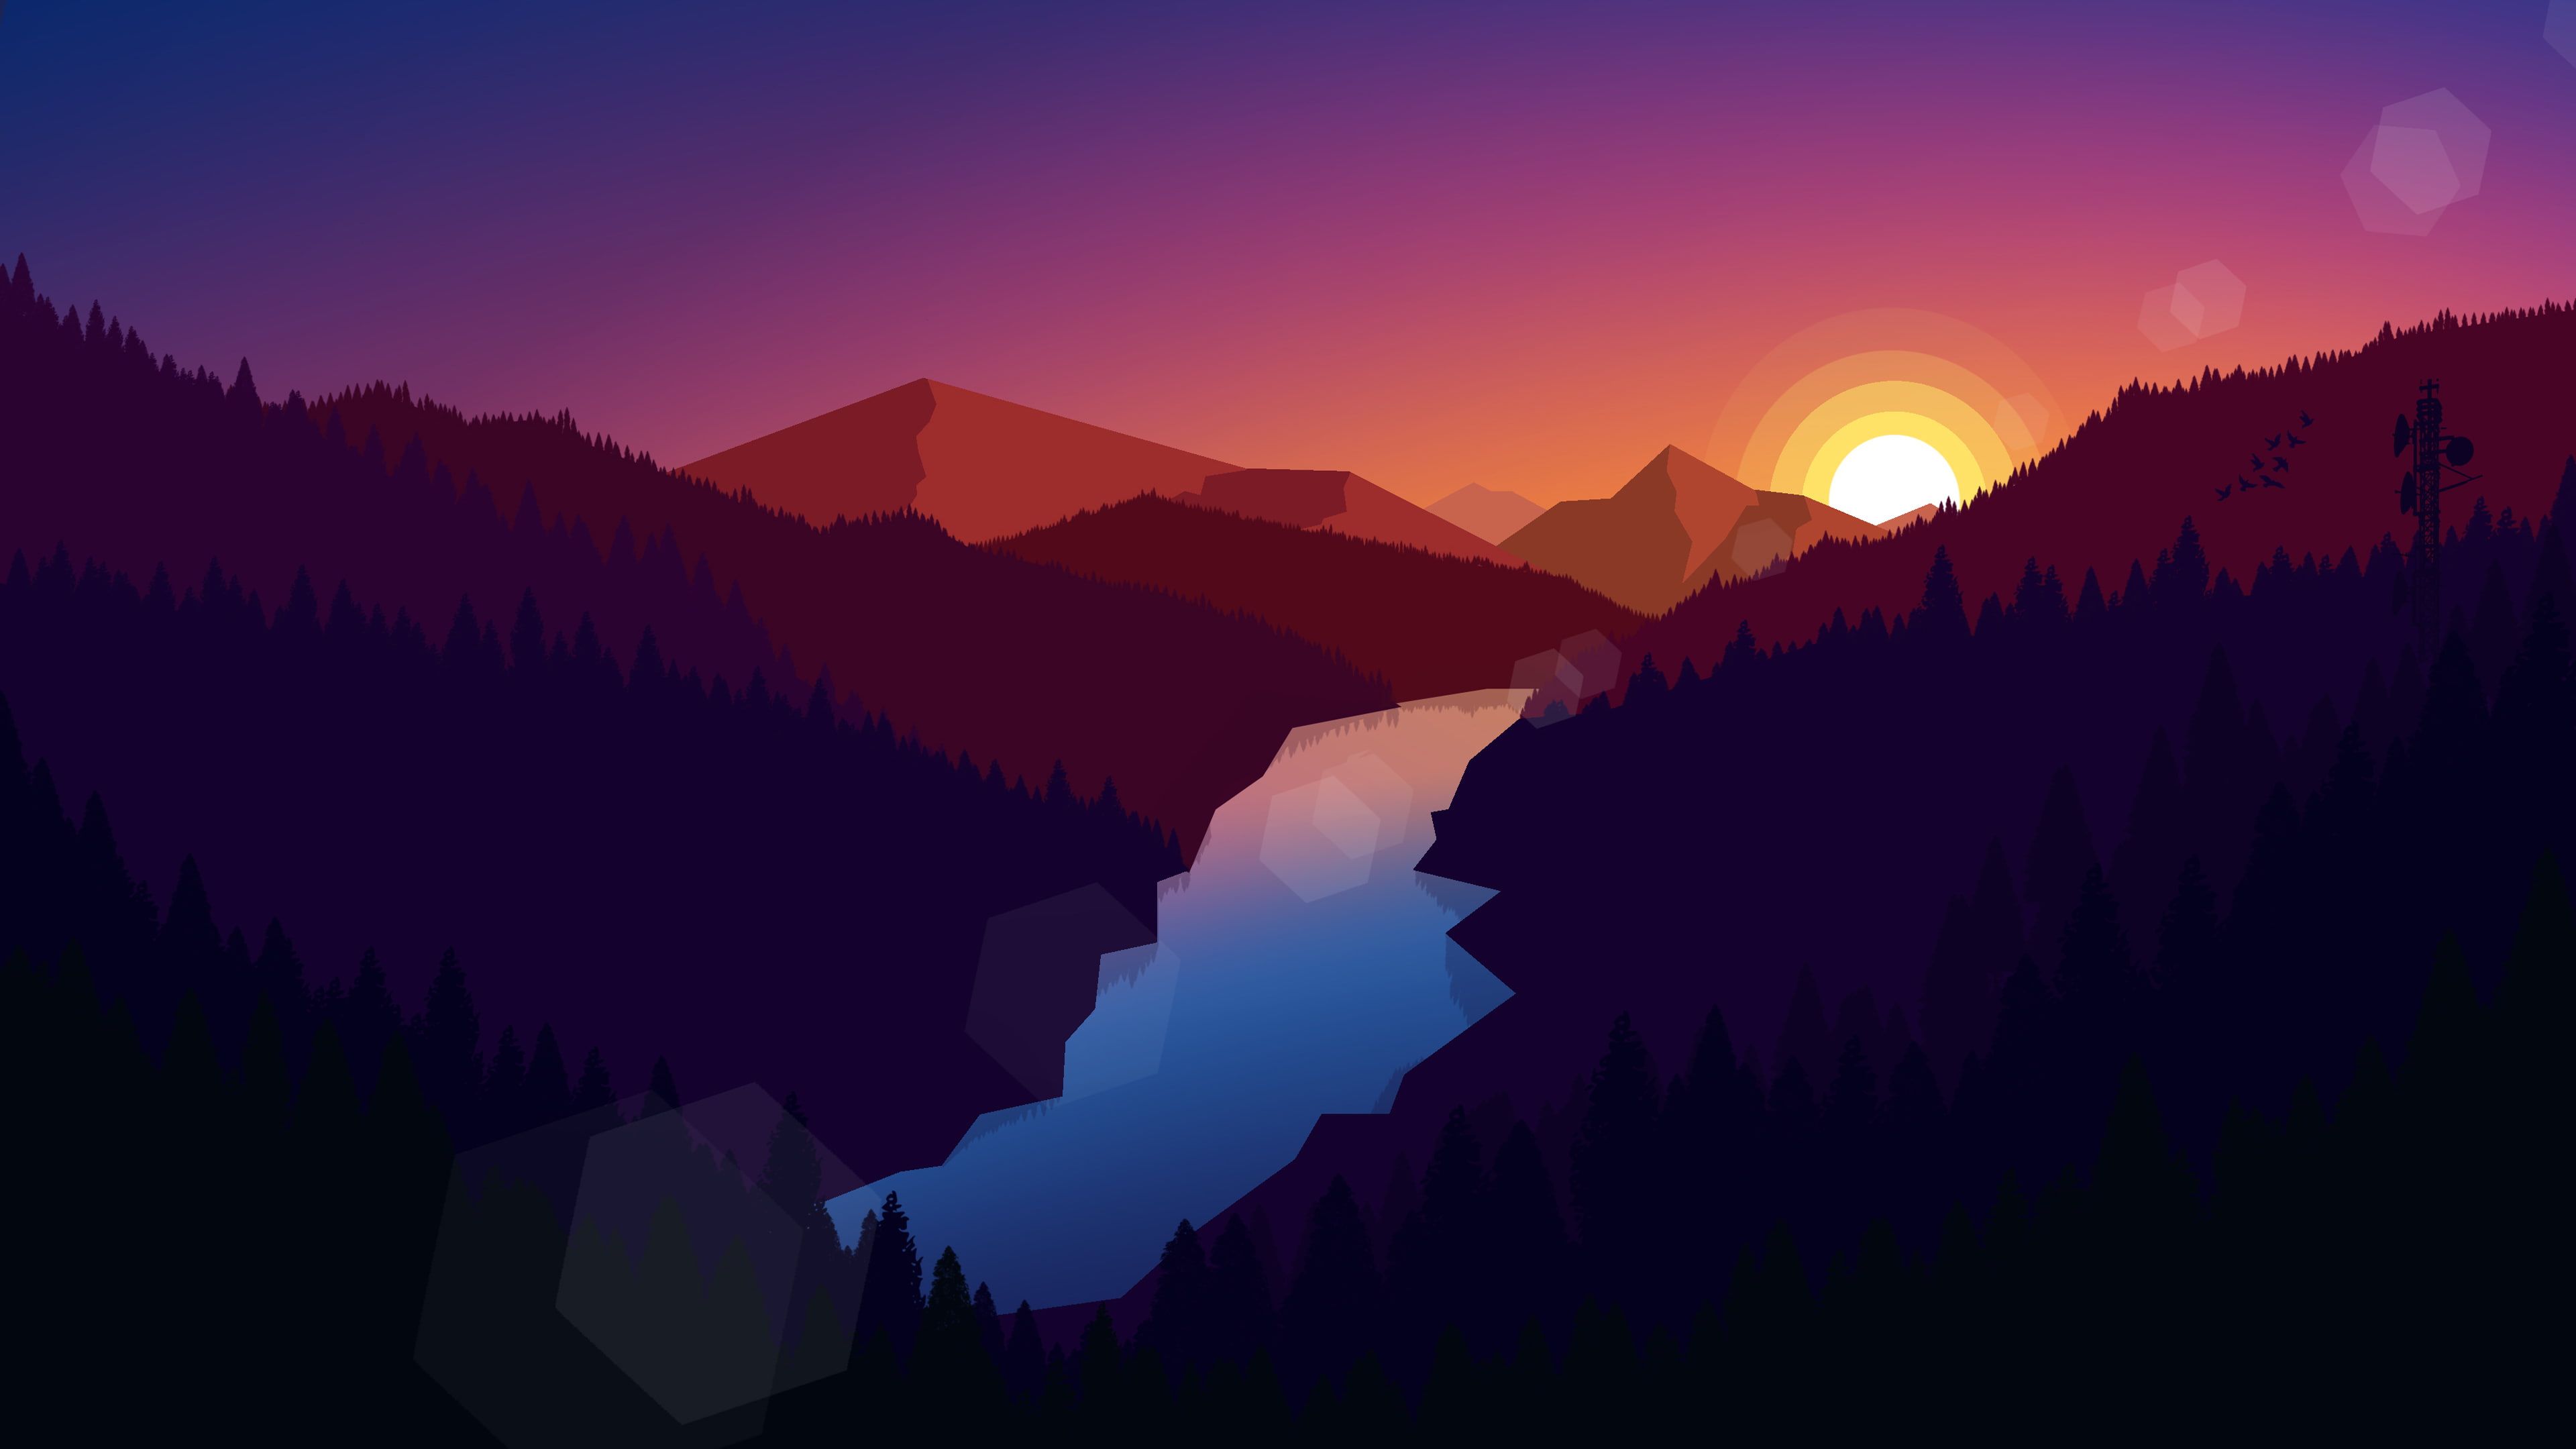 illustration #landscape #mountains #nature #sunset #river digital